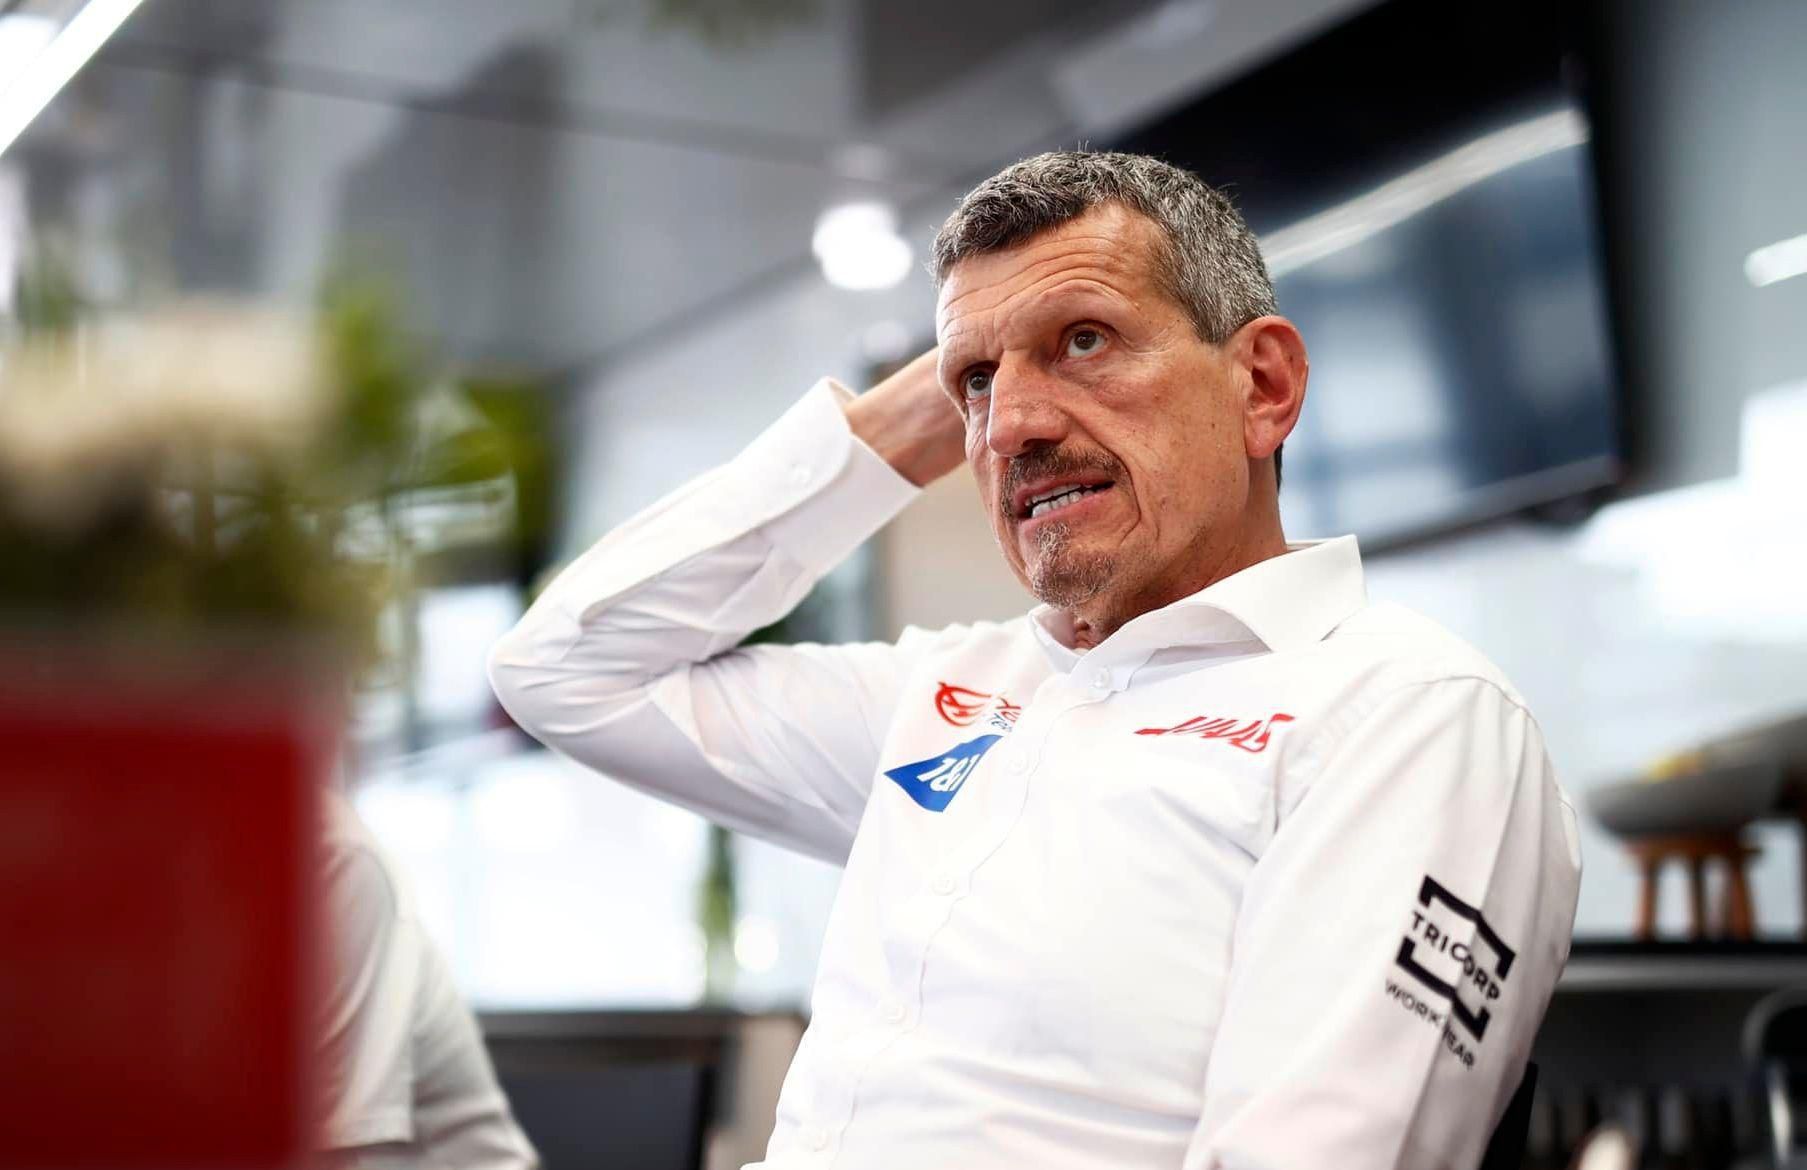 Günther Steiner, Haas F1 Team